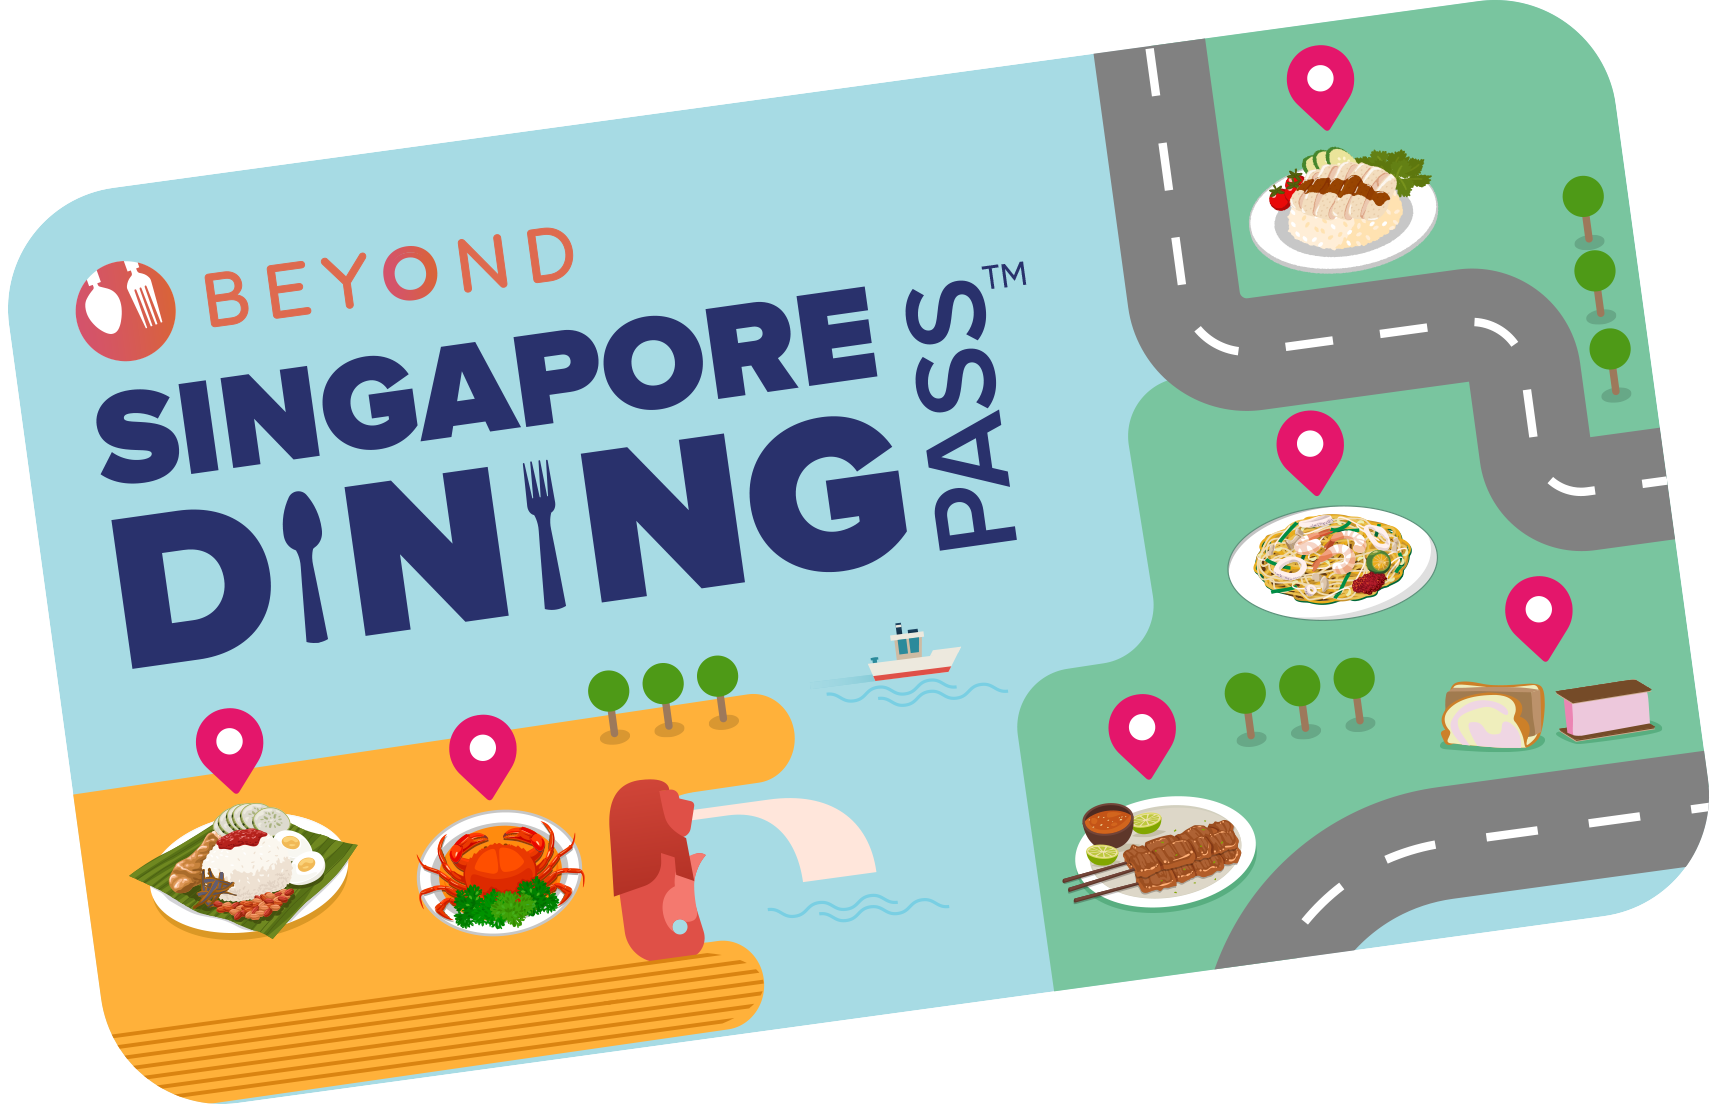 SINGAPORE_DINING_PASS_2022_CARD.png